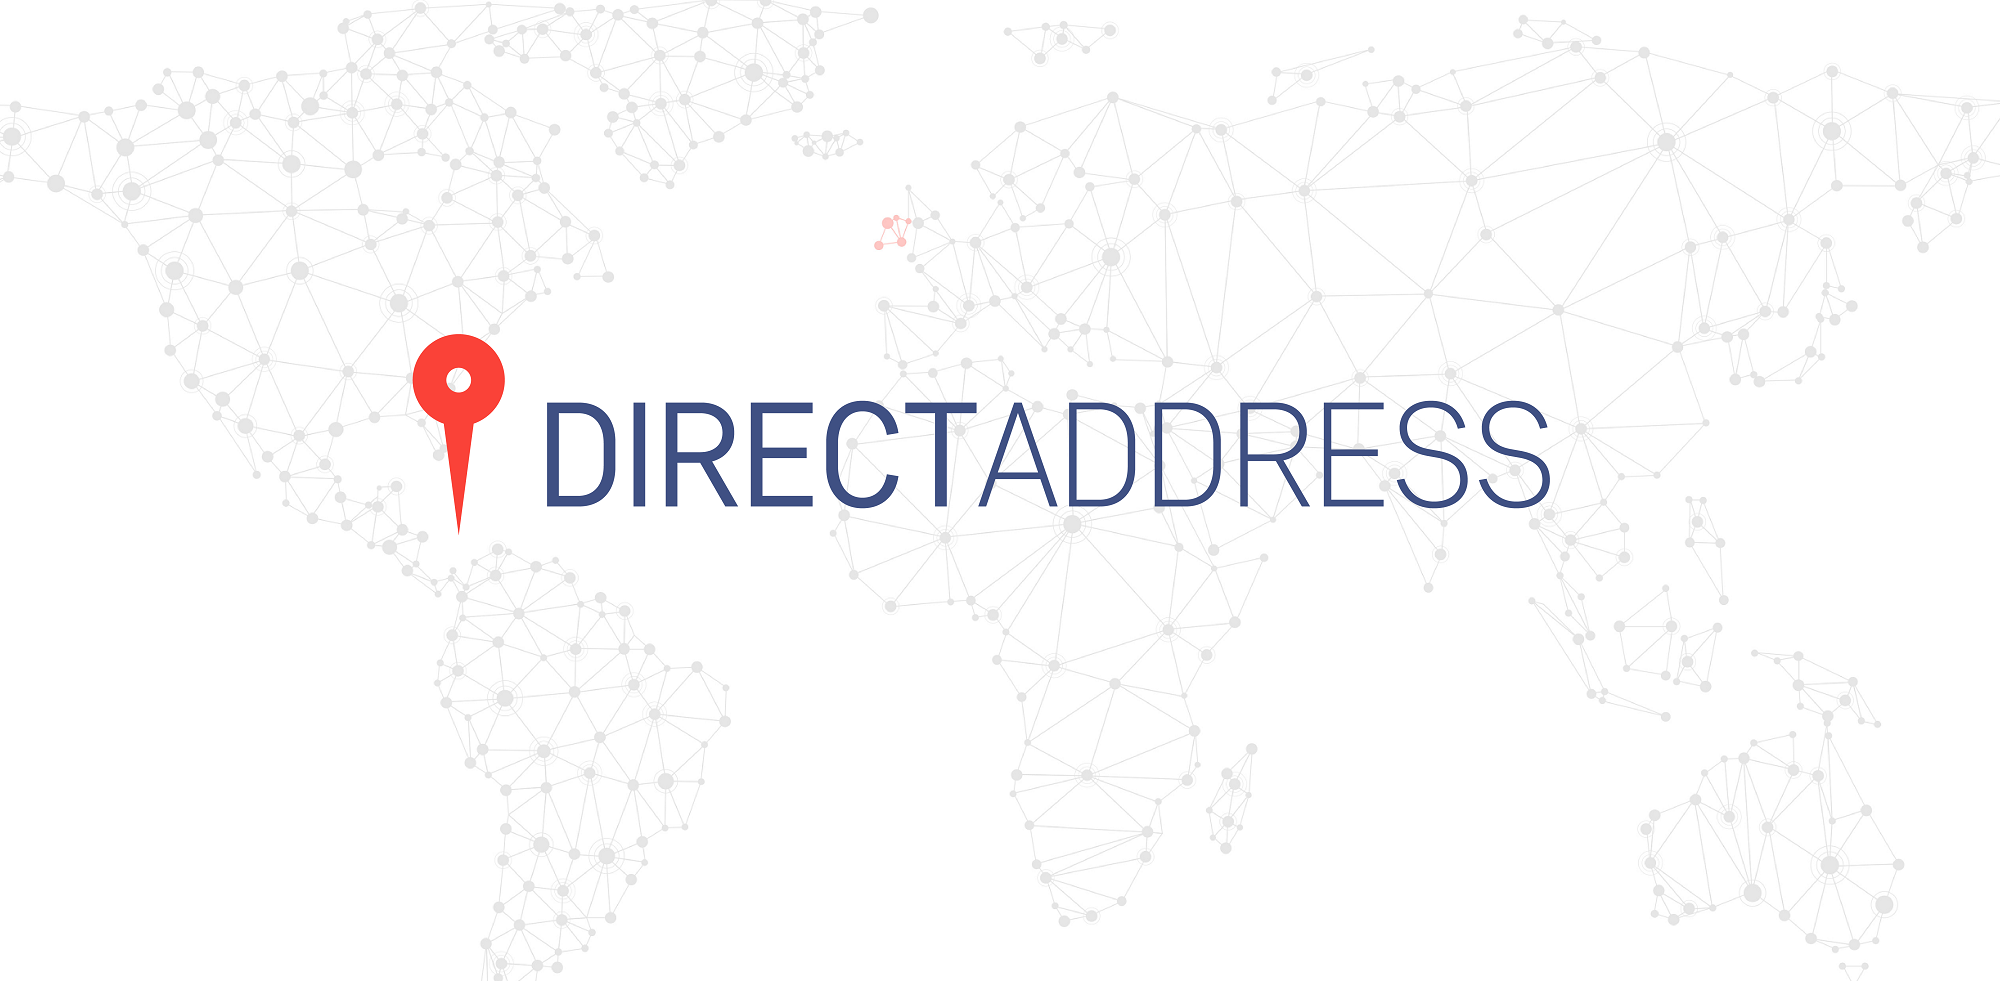 DirectAddress